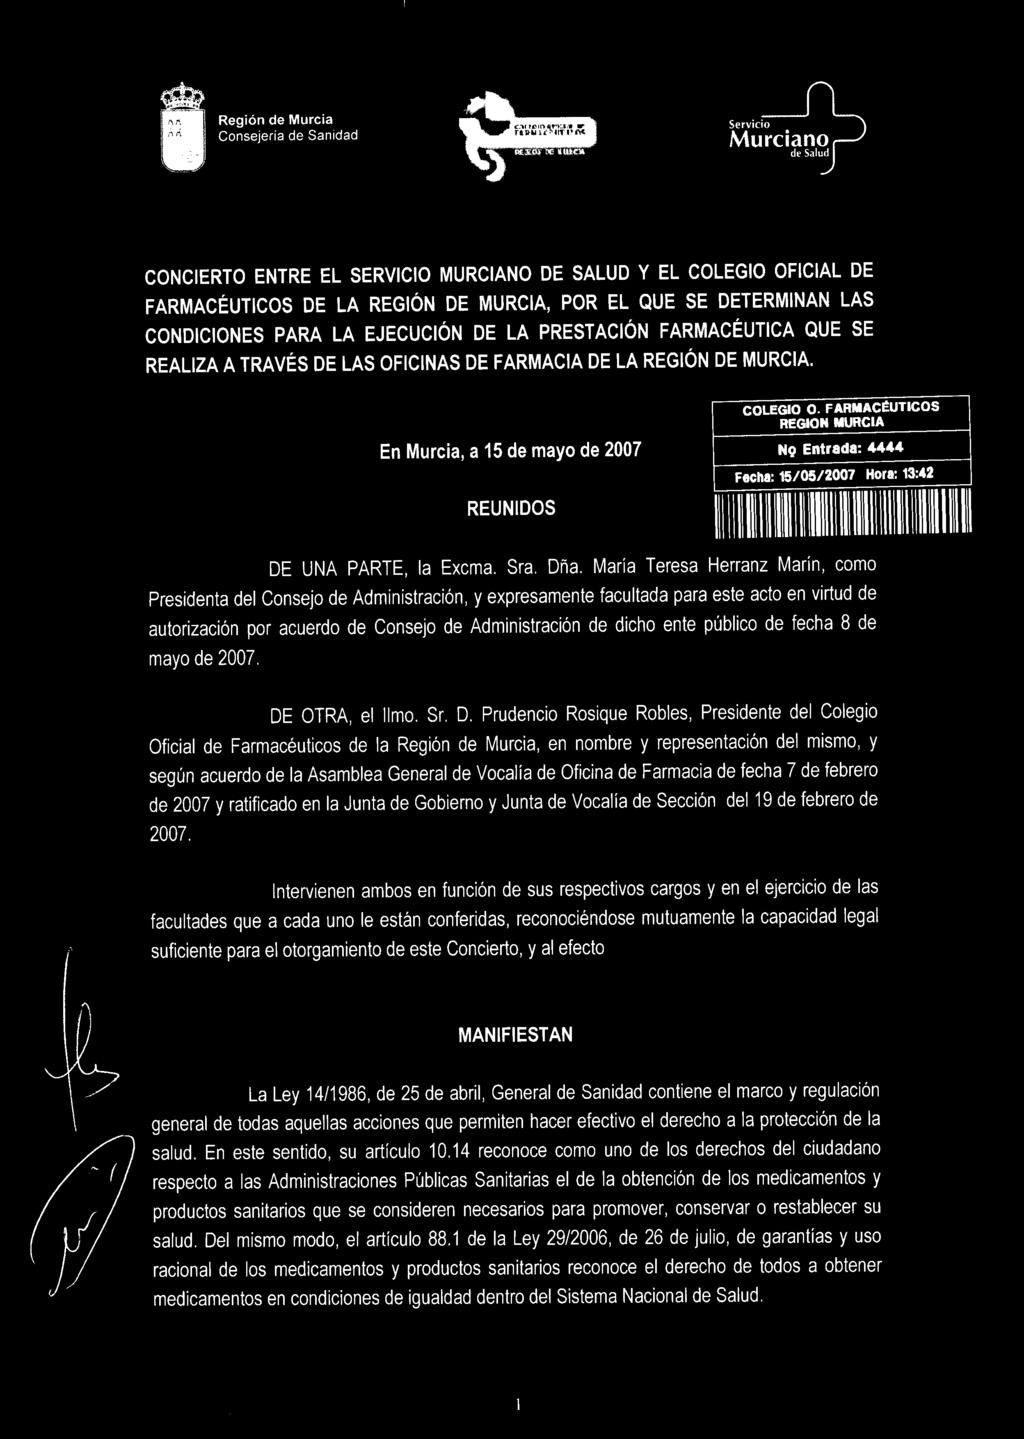 Región de Murcia Consejeria de Sanidad Validez desconocida Digitally signed by Colegio Oficial de Farmacéuticos de la Región de Murcia Date: 2007.05.